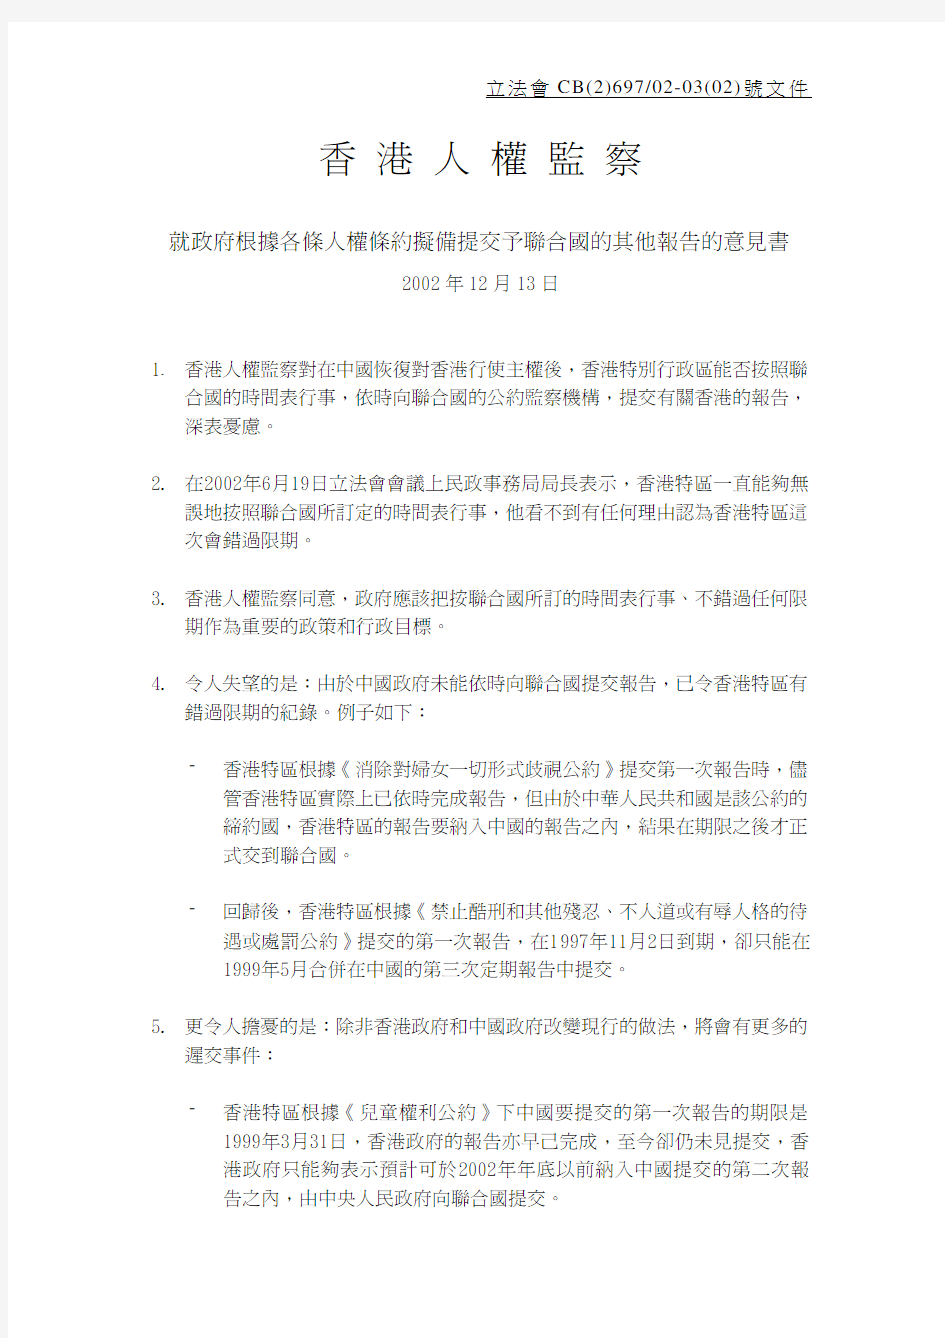 香港人权监察就政府根据各条人权条约拟备提交予联合国的其他报告的意见书